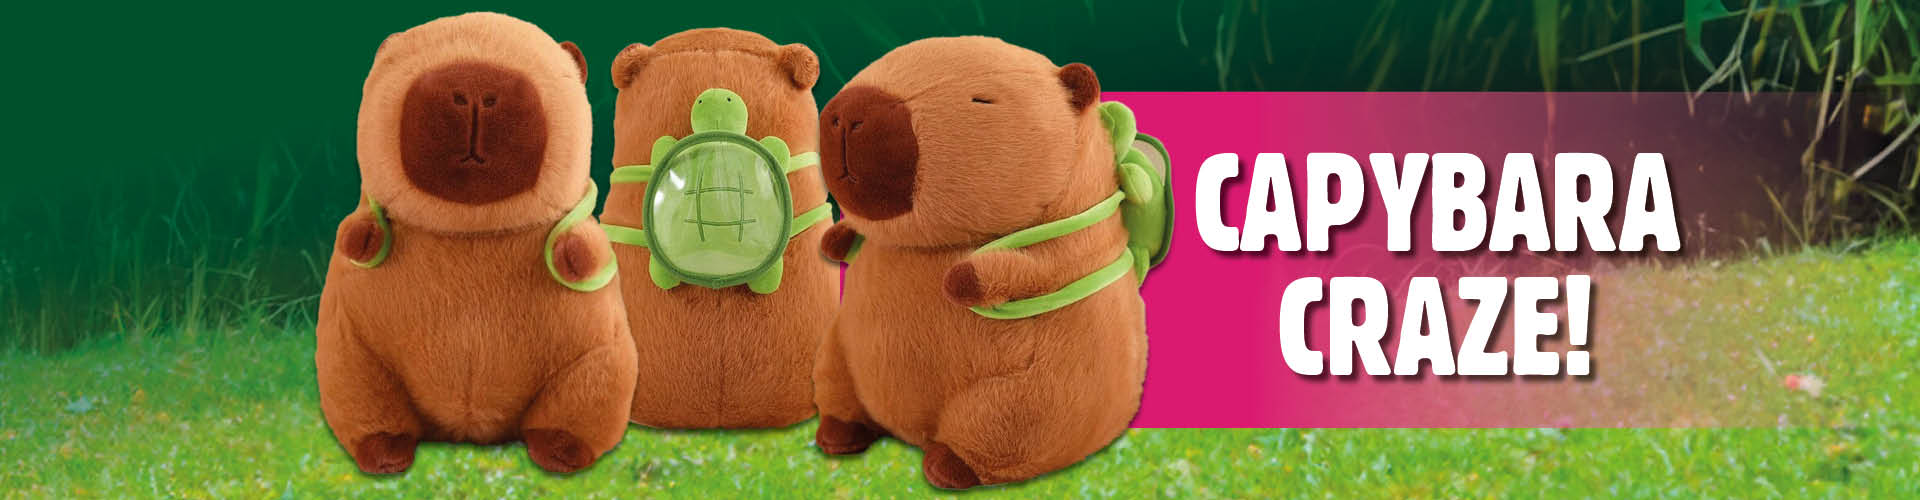 Capybara Plush Toy Collection